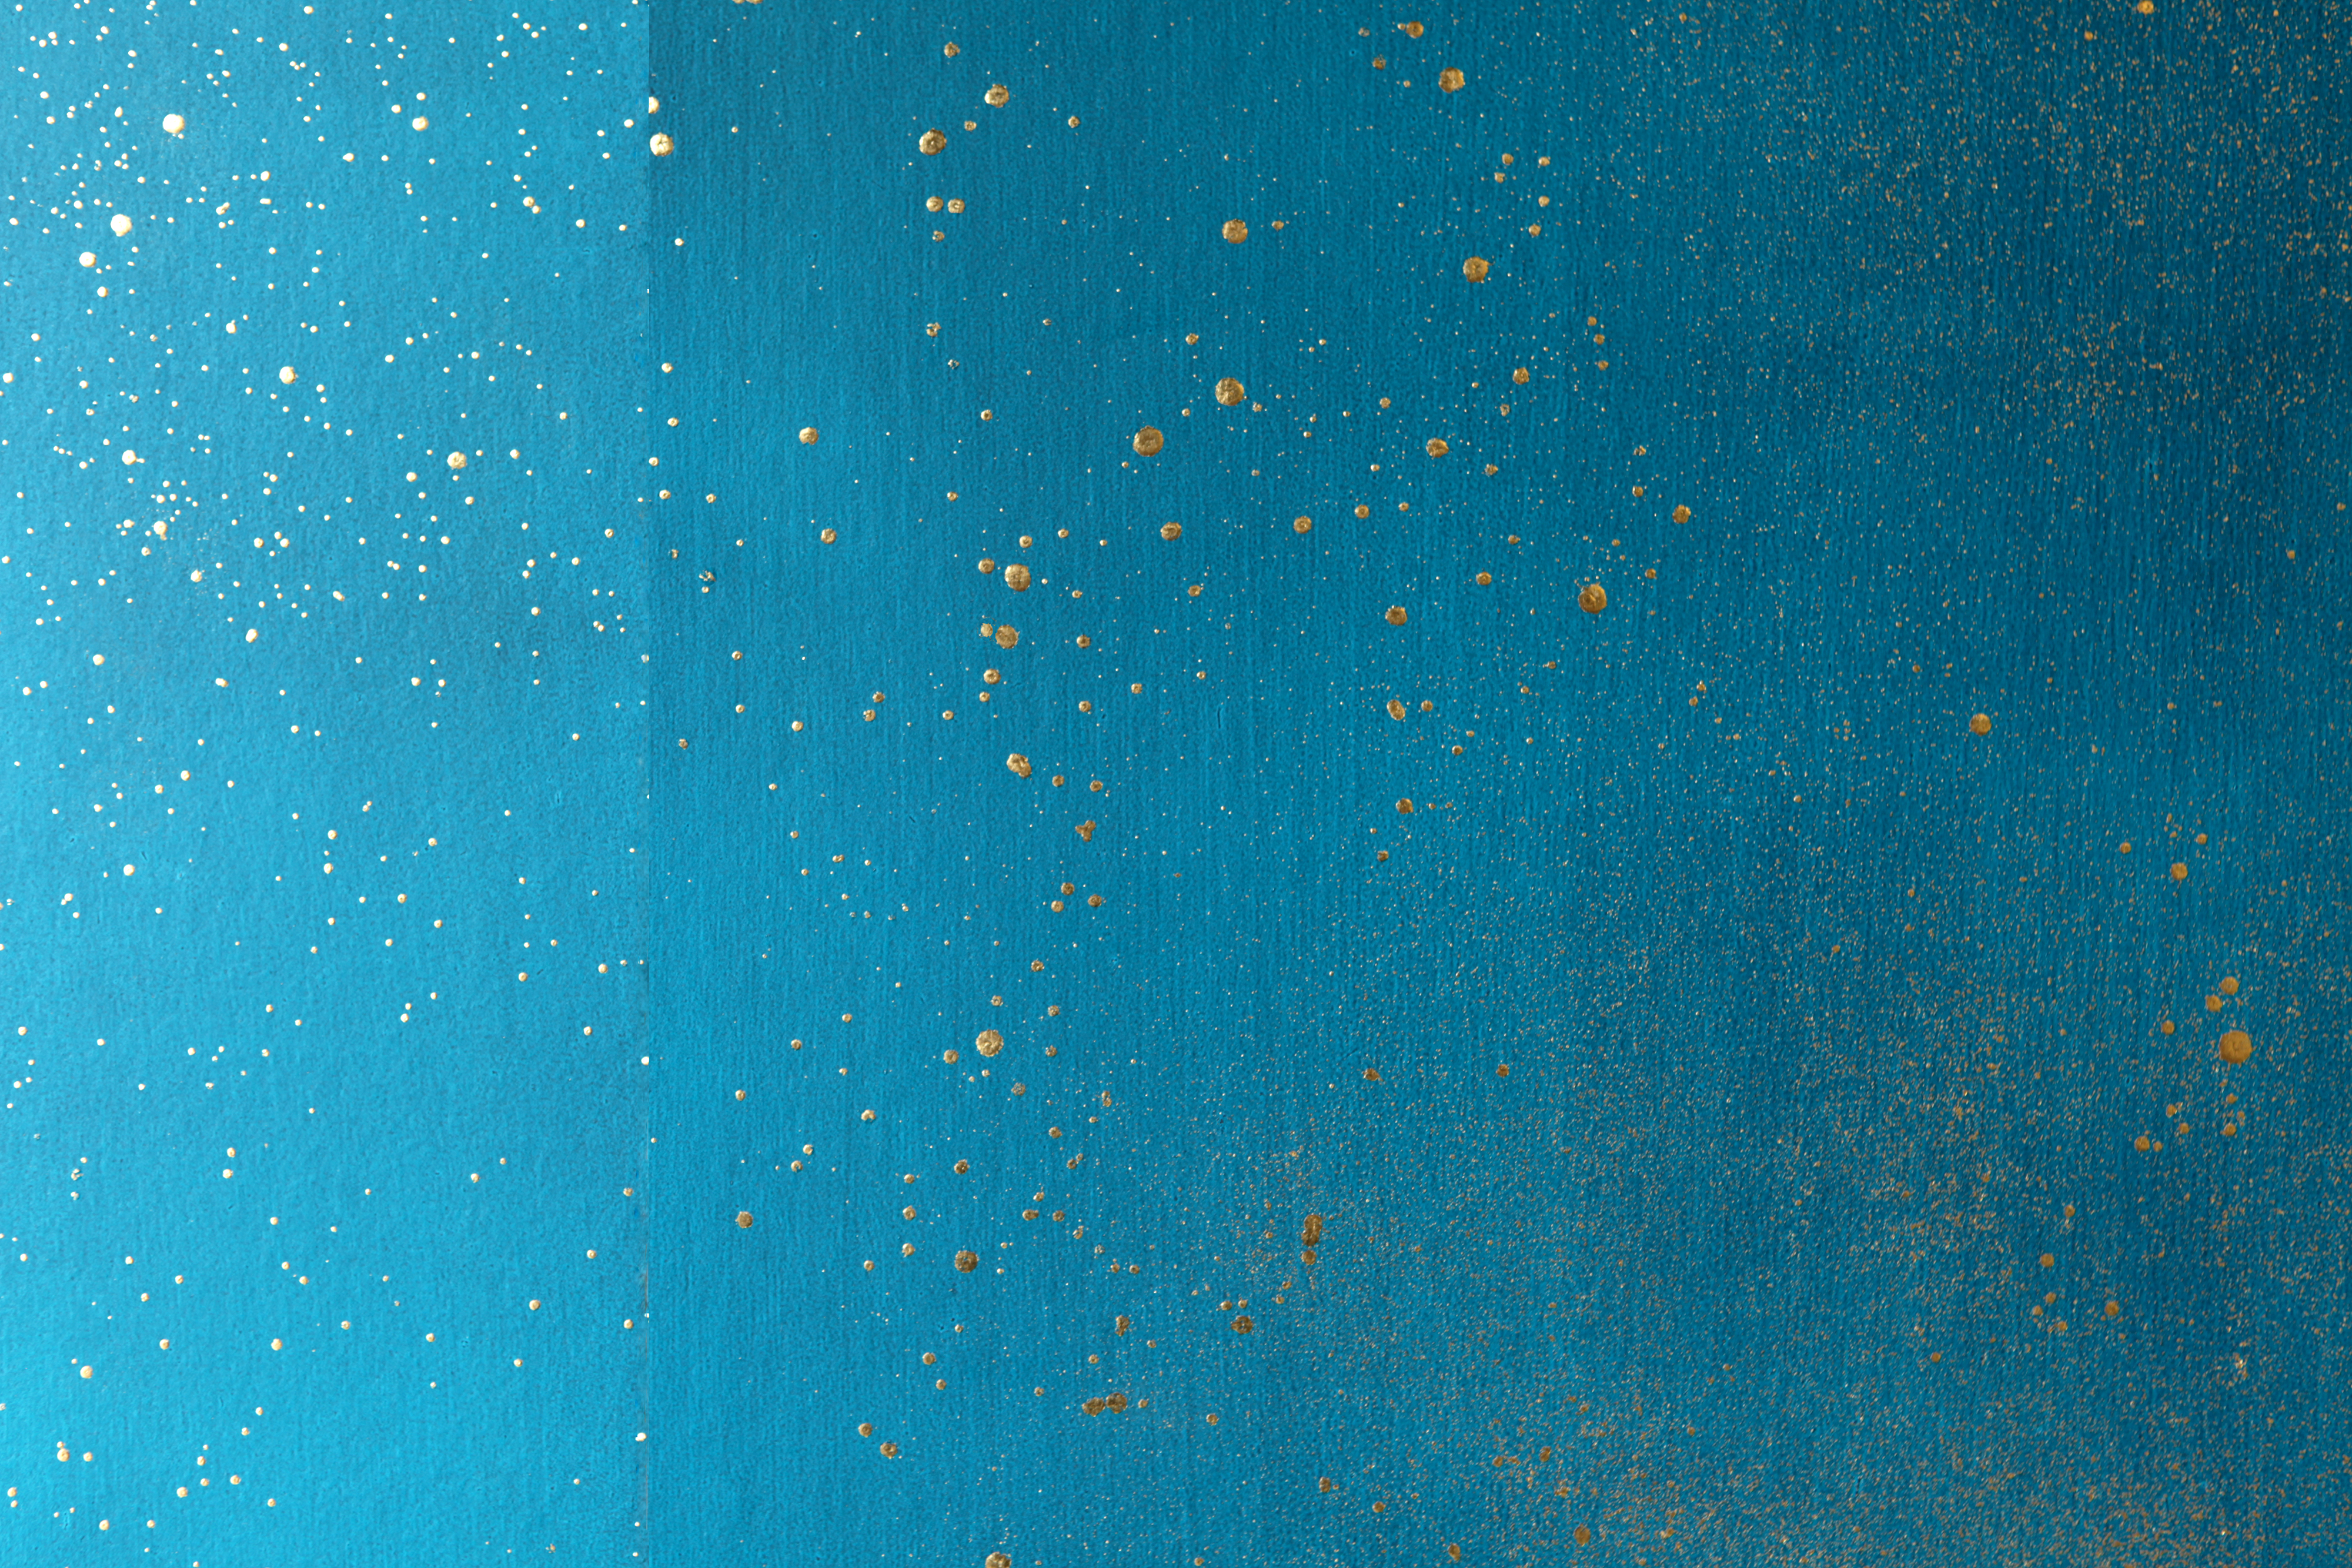 Detail of a wallpaper in a random splattered pattern in metallic gold on a blue field.